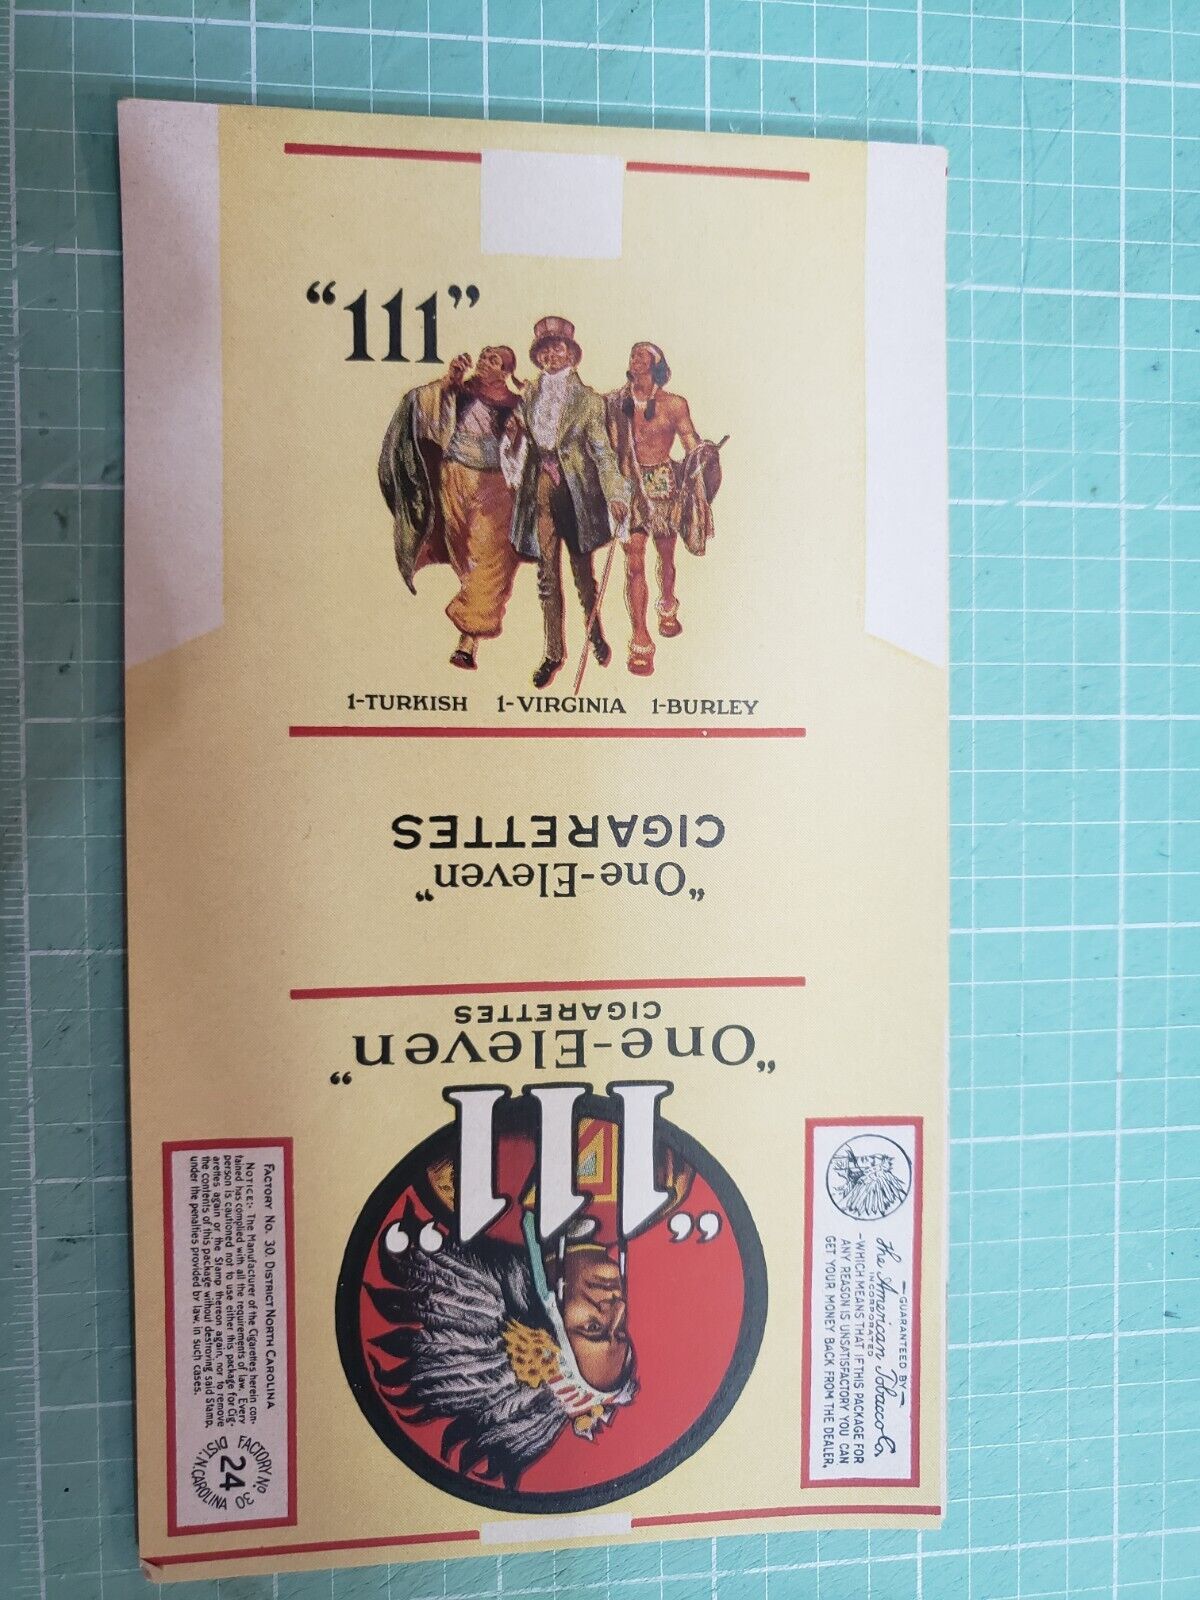 Vintage “111” , One-Eleven, cigarette label